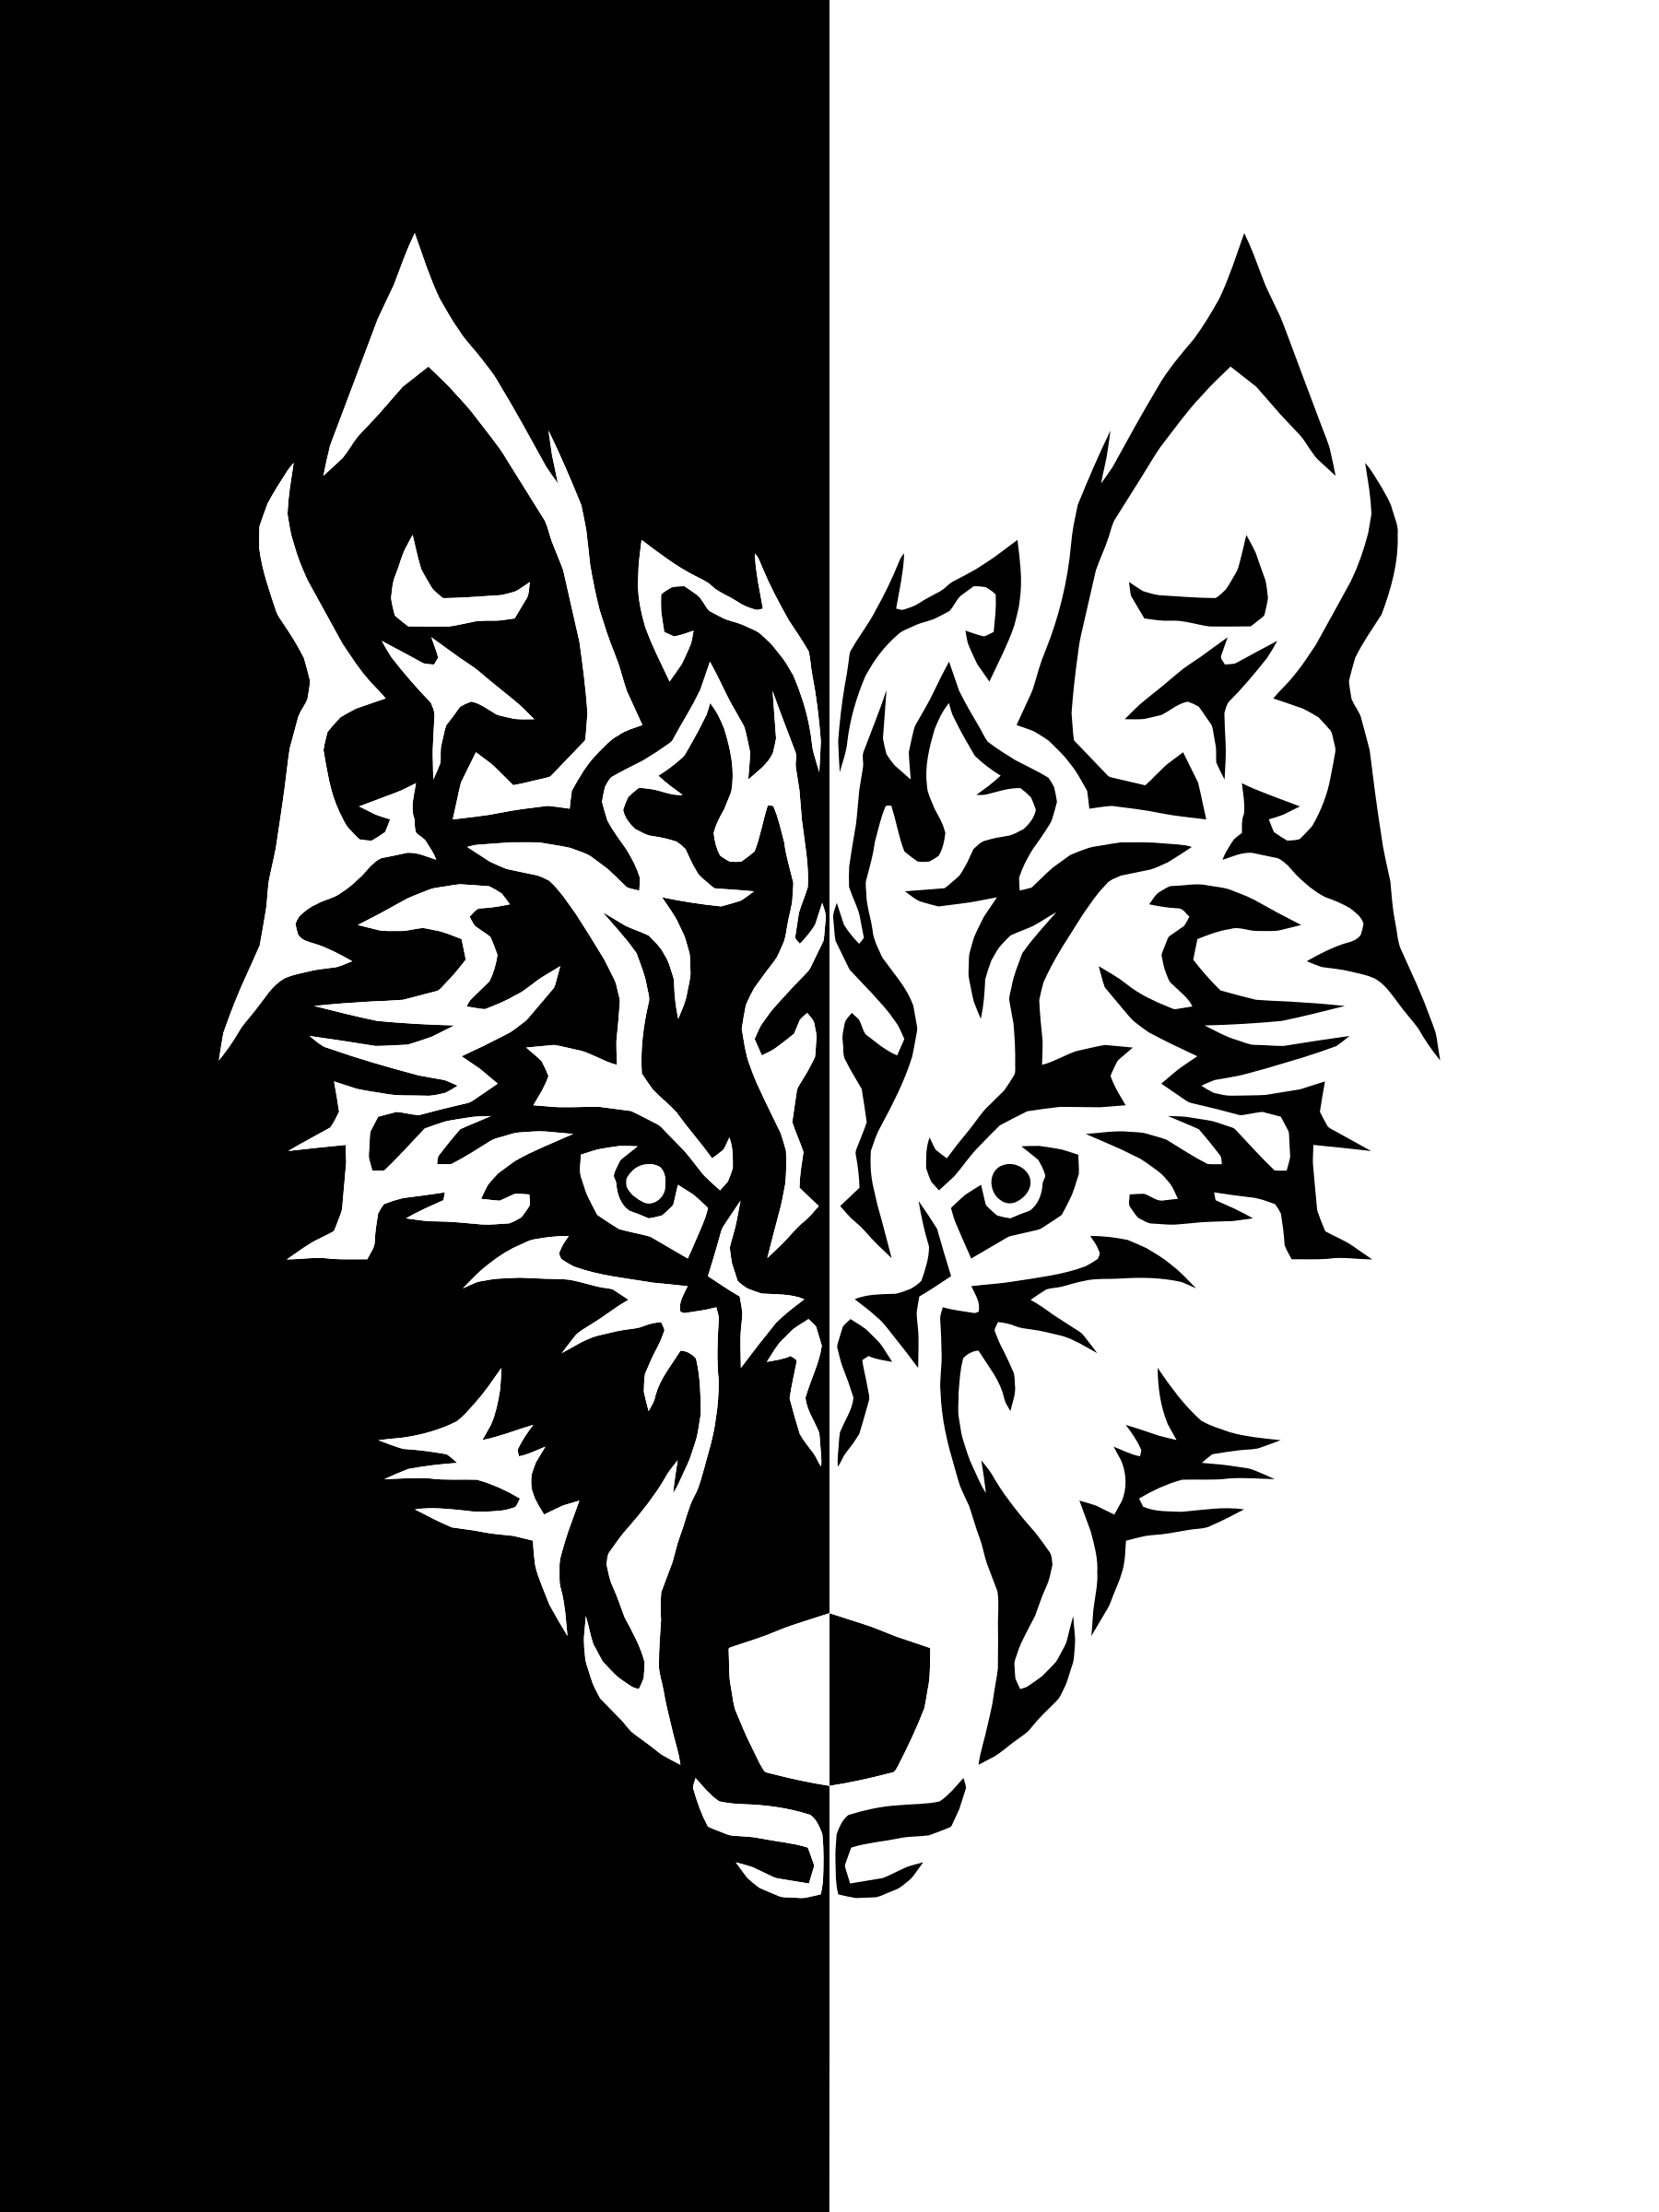 Black and White Wolf Logo - Black And White Wolf PNG Transparent Black And White Wolf.PNG Image